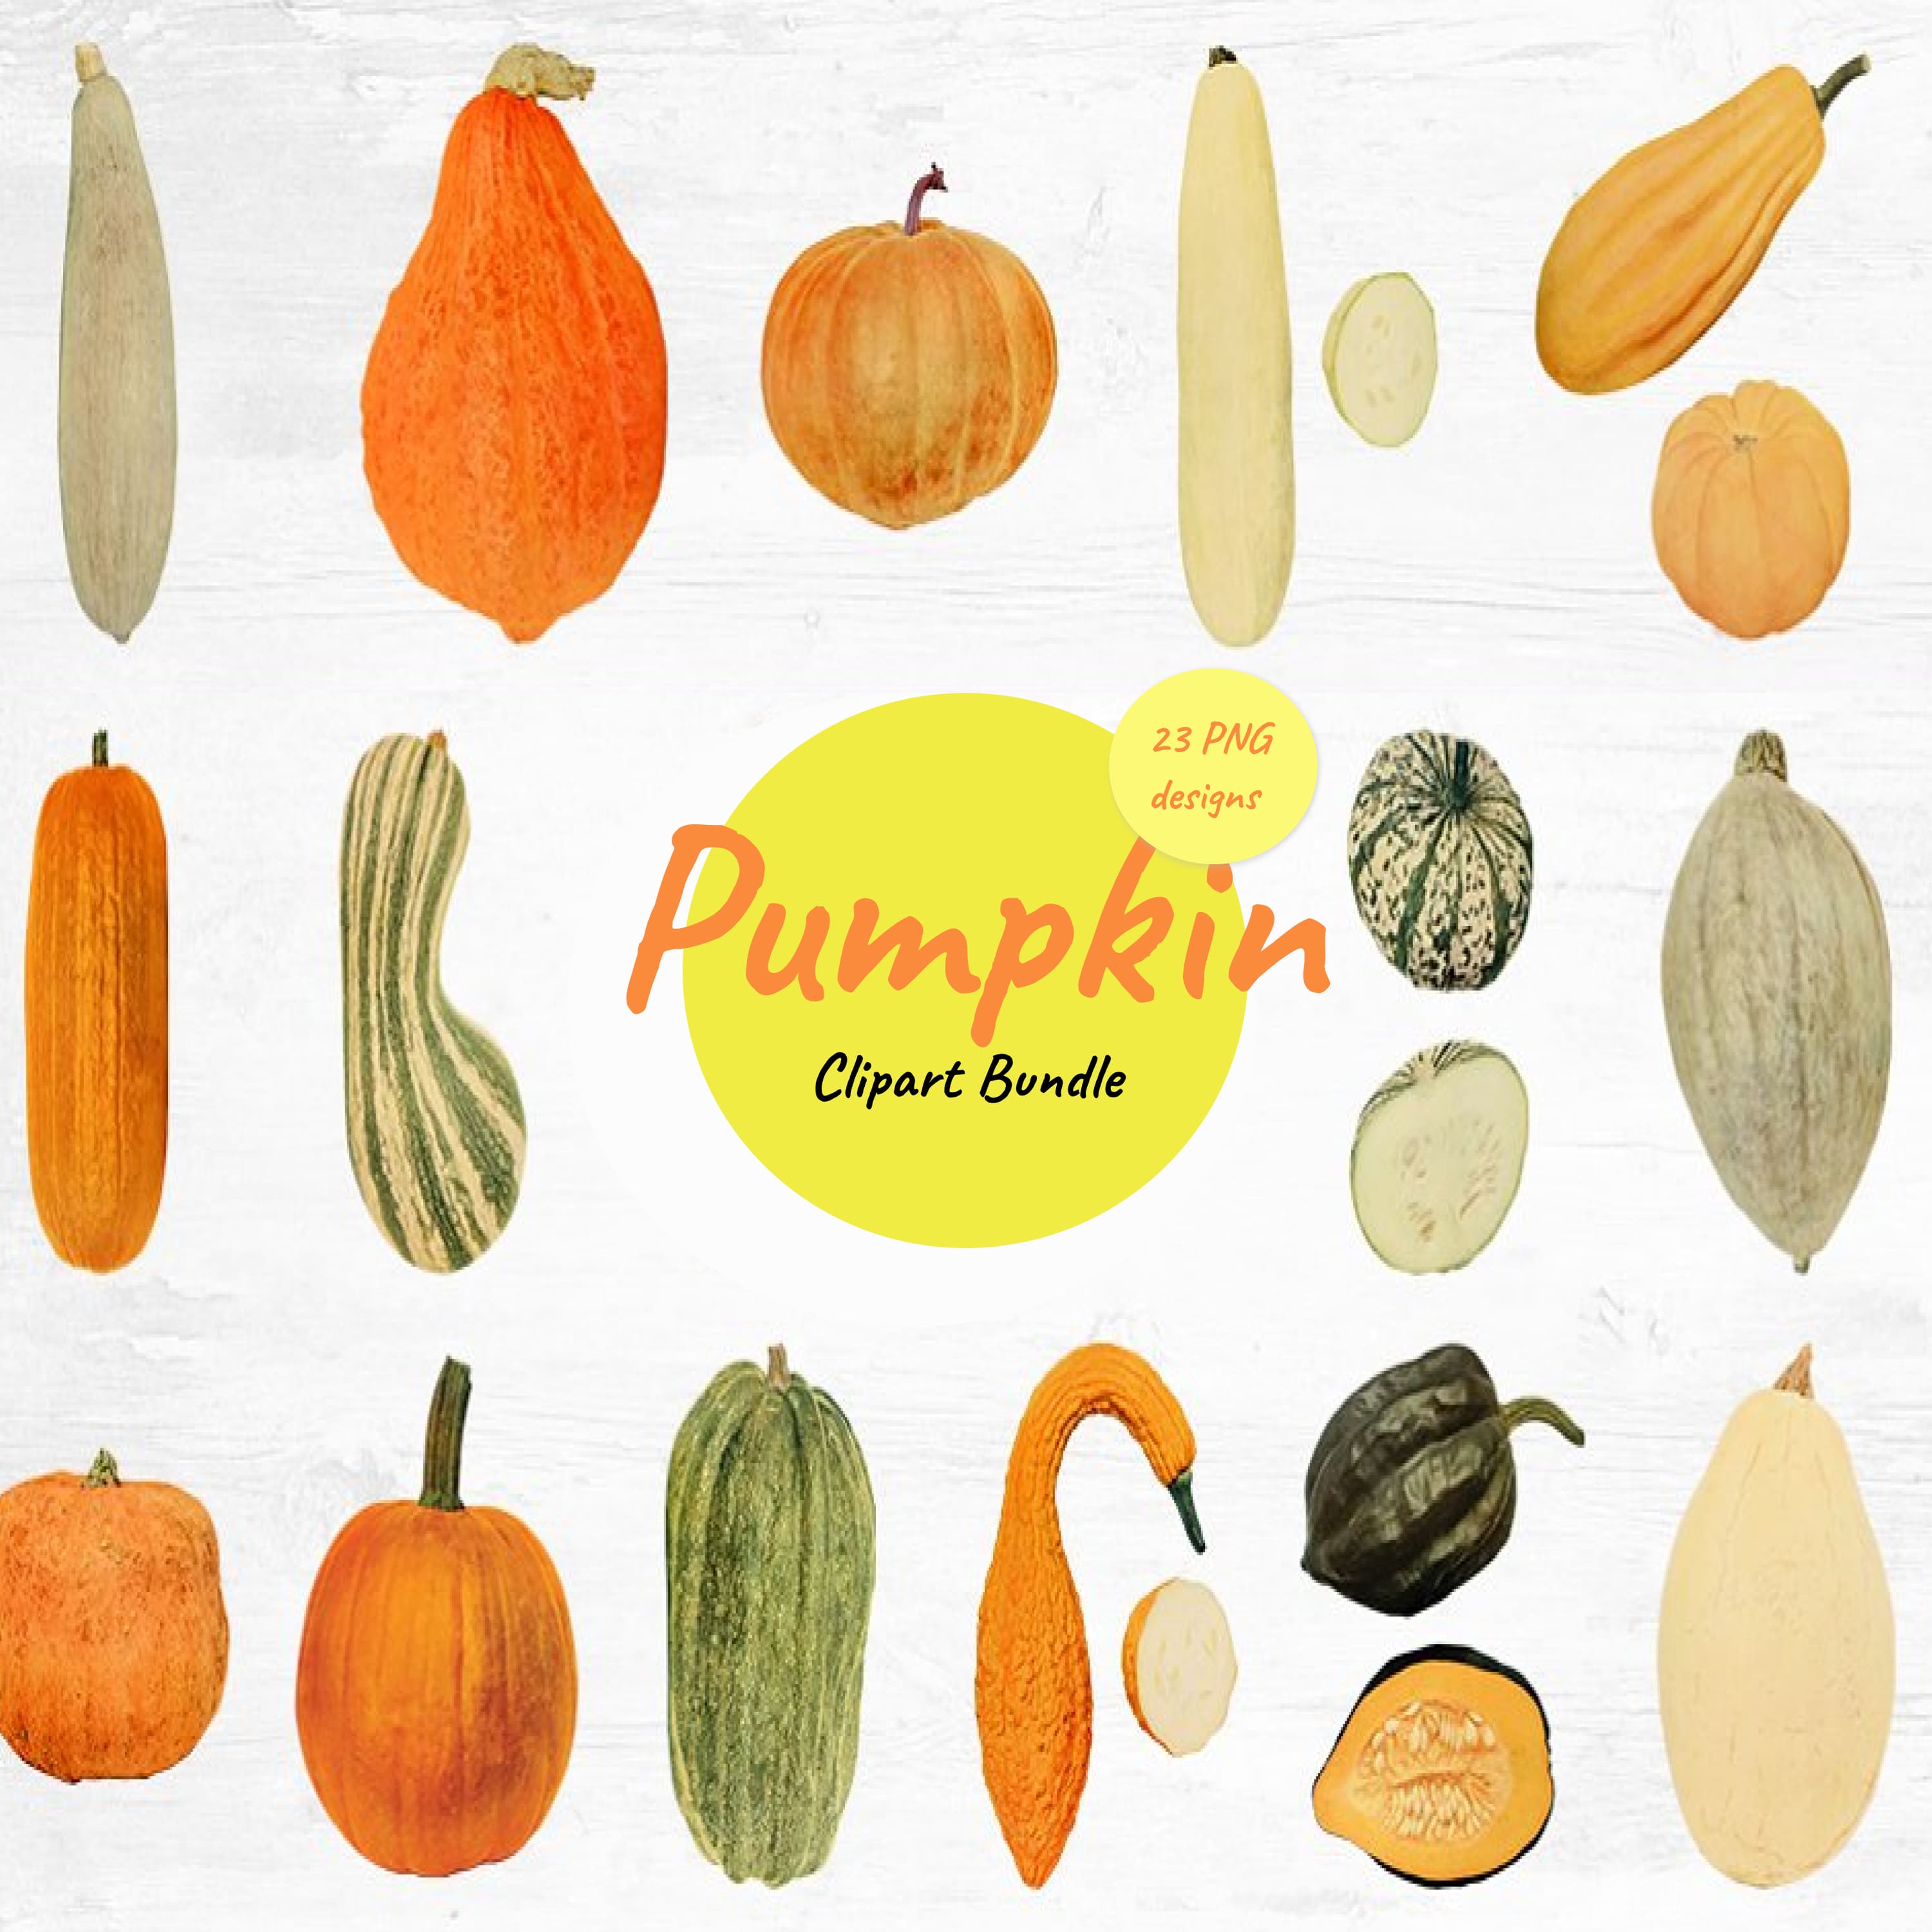 Pumpkin Clipart Bundle (20) cover.